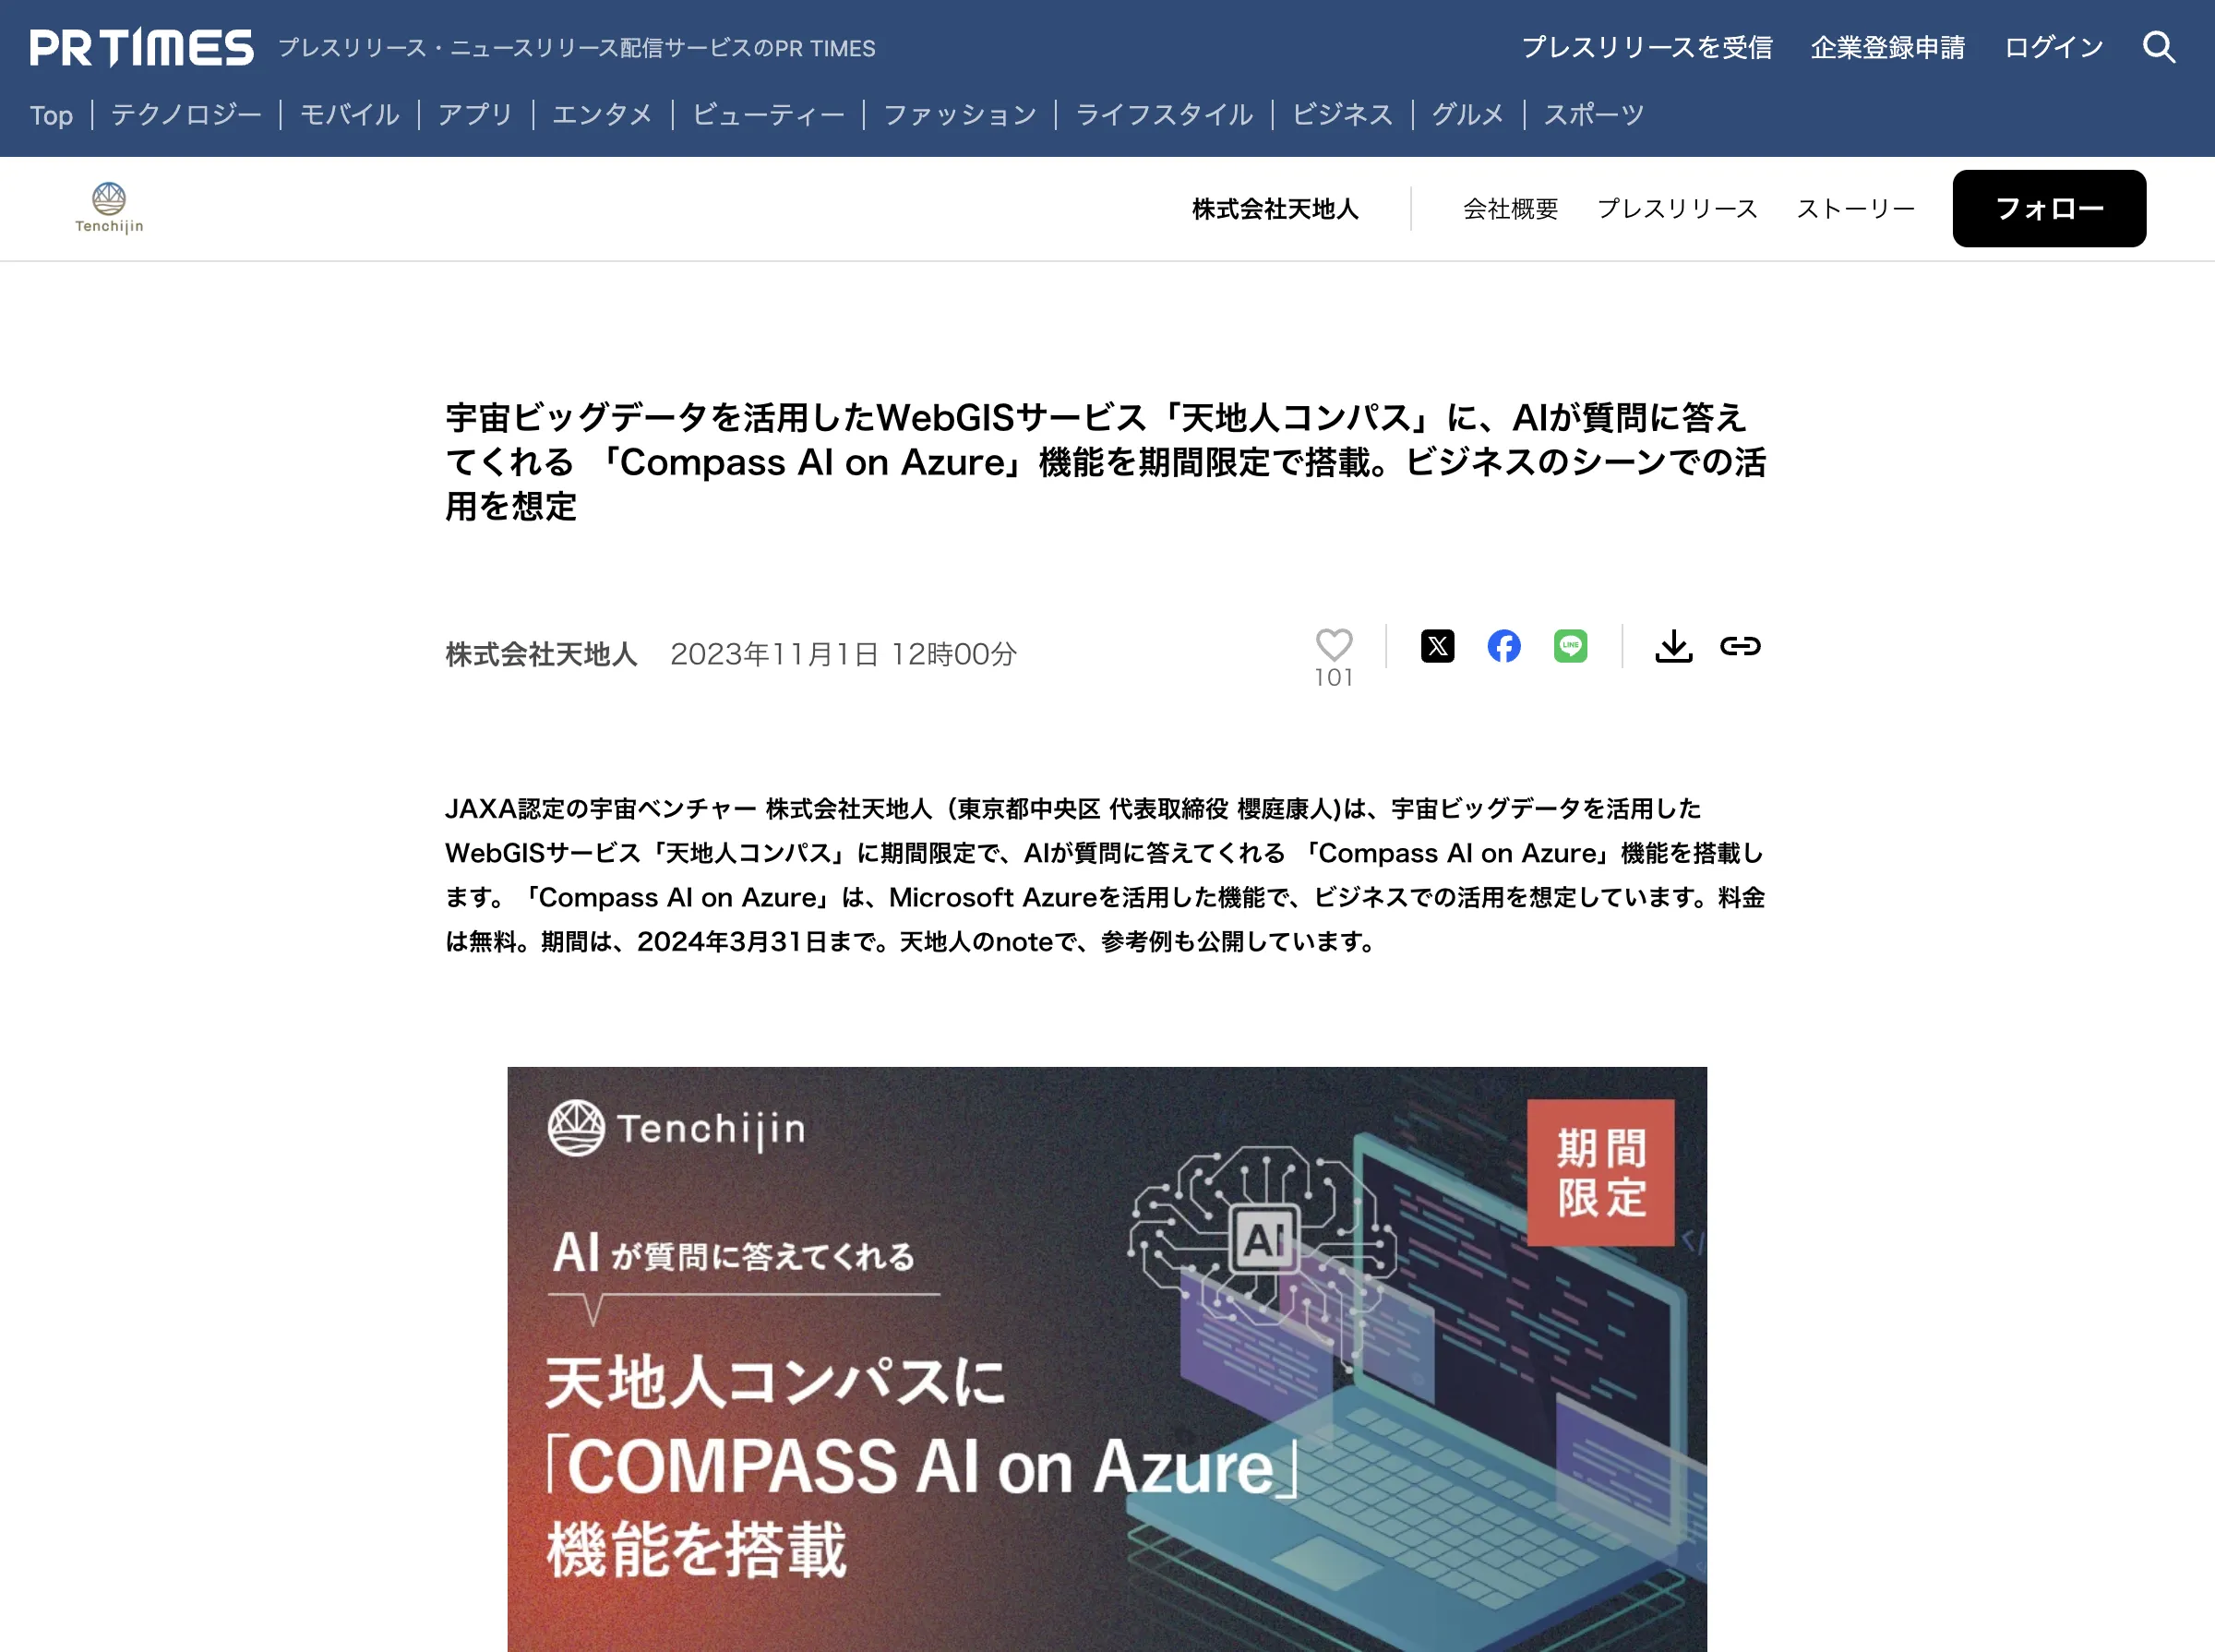 天地人コンパスが切り開く新時代：「Compass AI on Azure」で宇宙データがビジネスチャンスを拓くの紹介画像